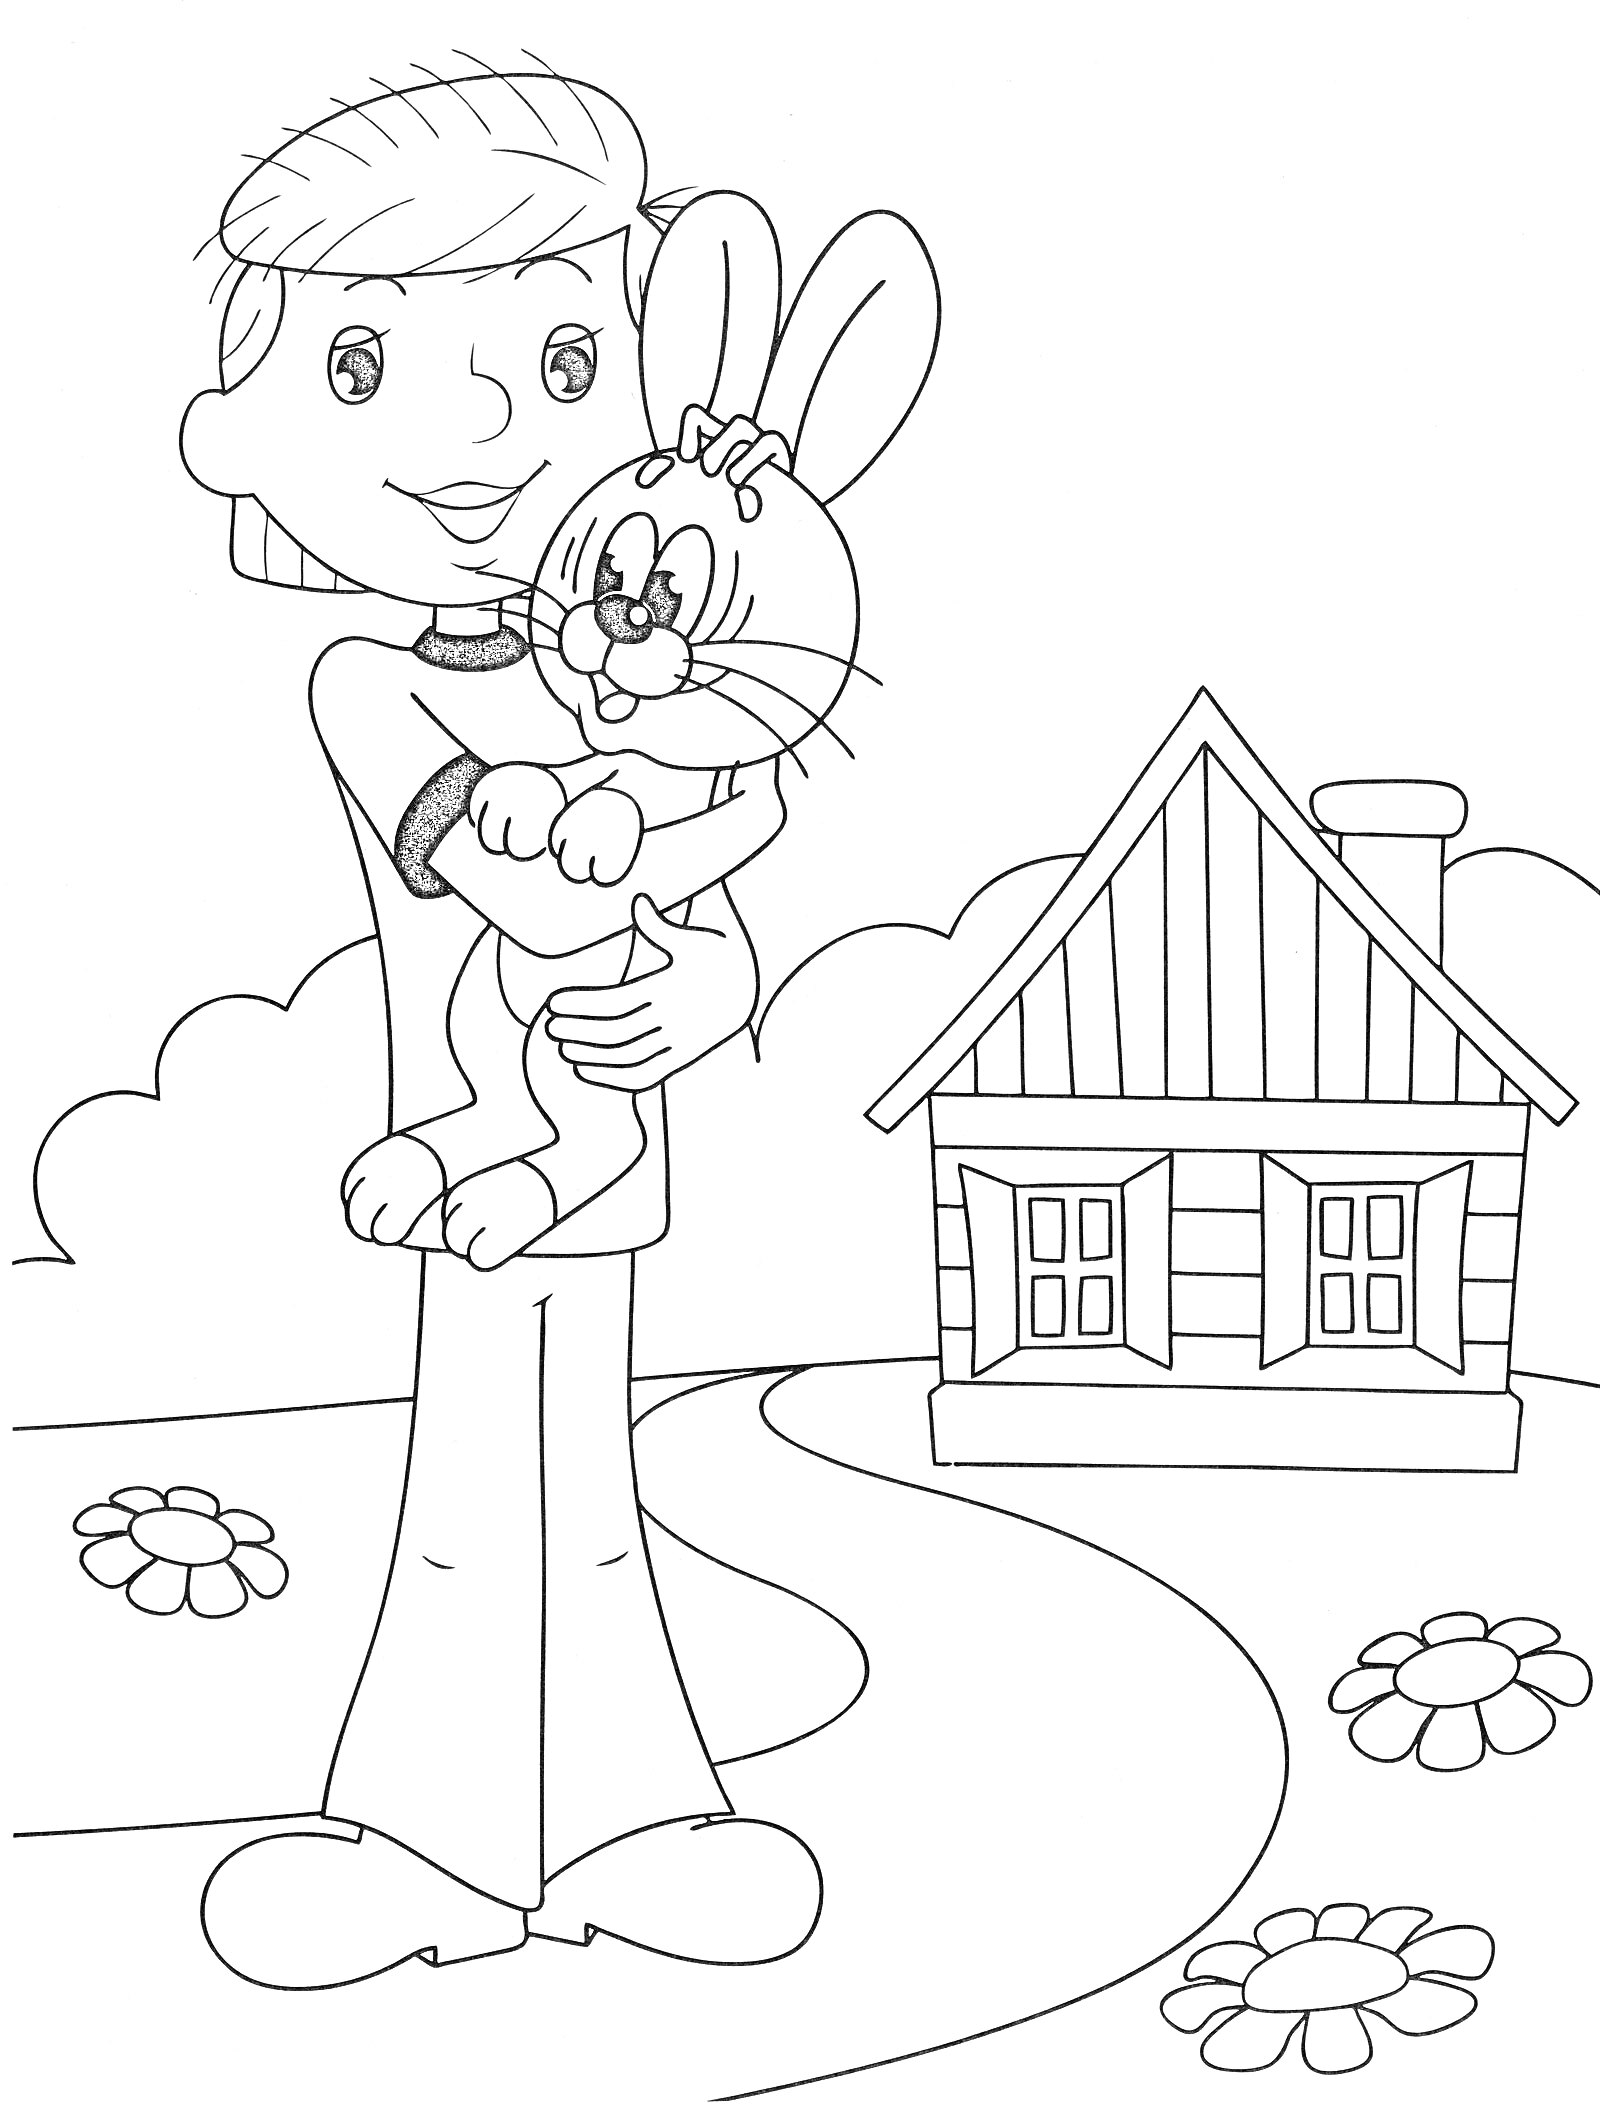 Мальчик с кроликом на руках перед деревянным домом